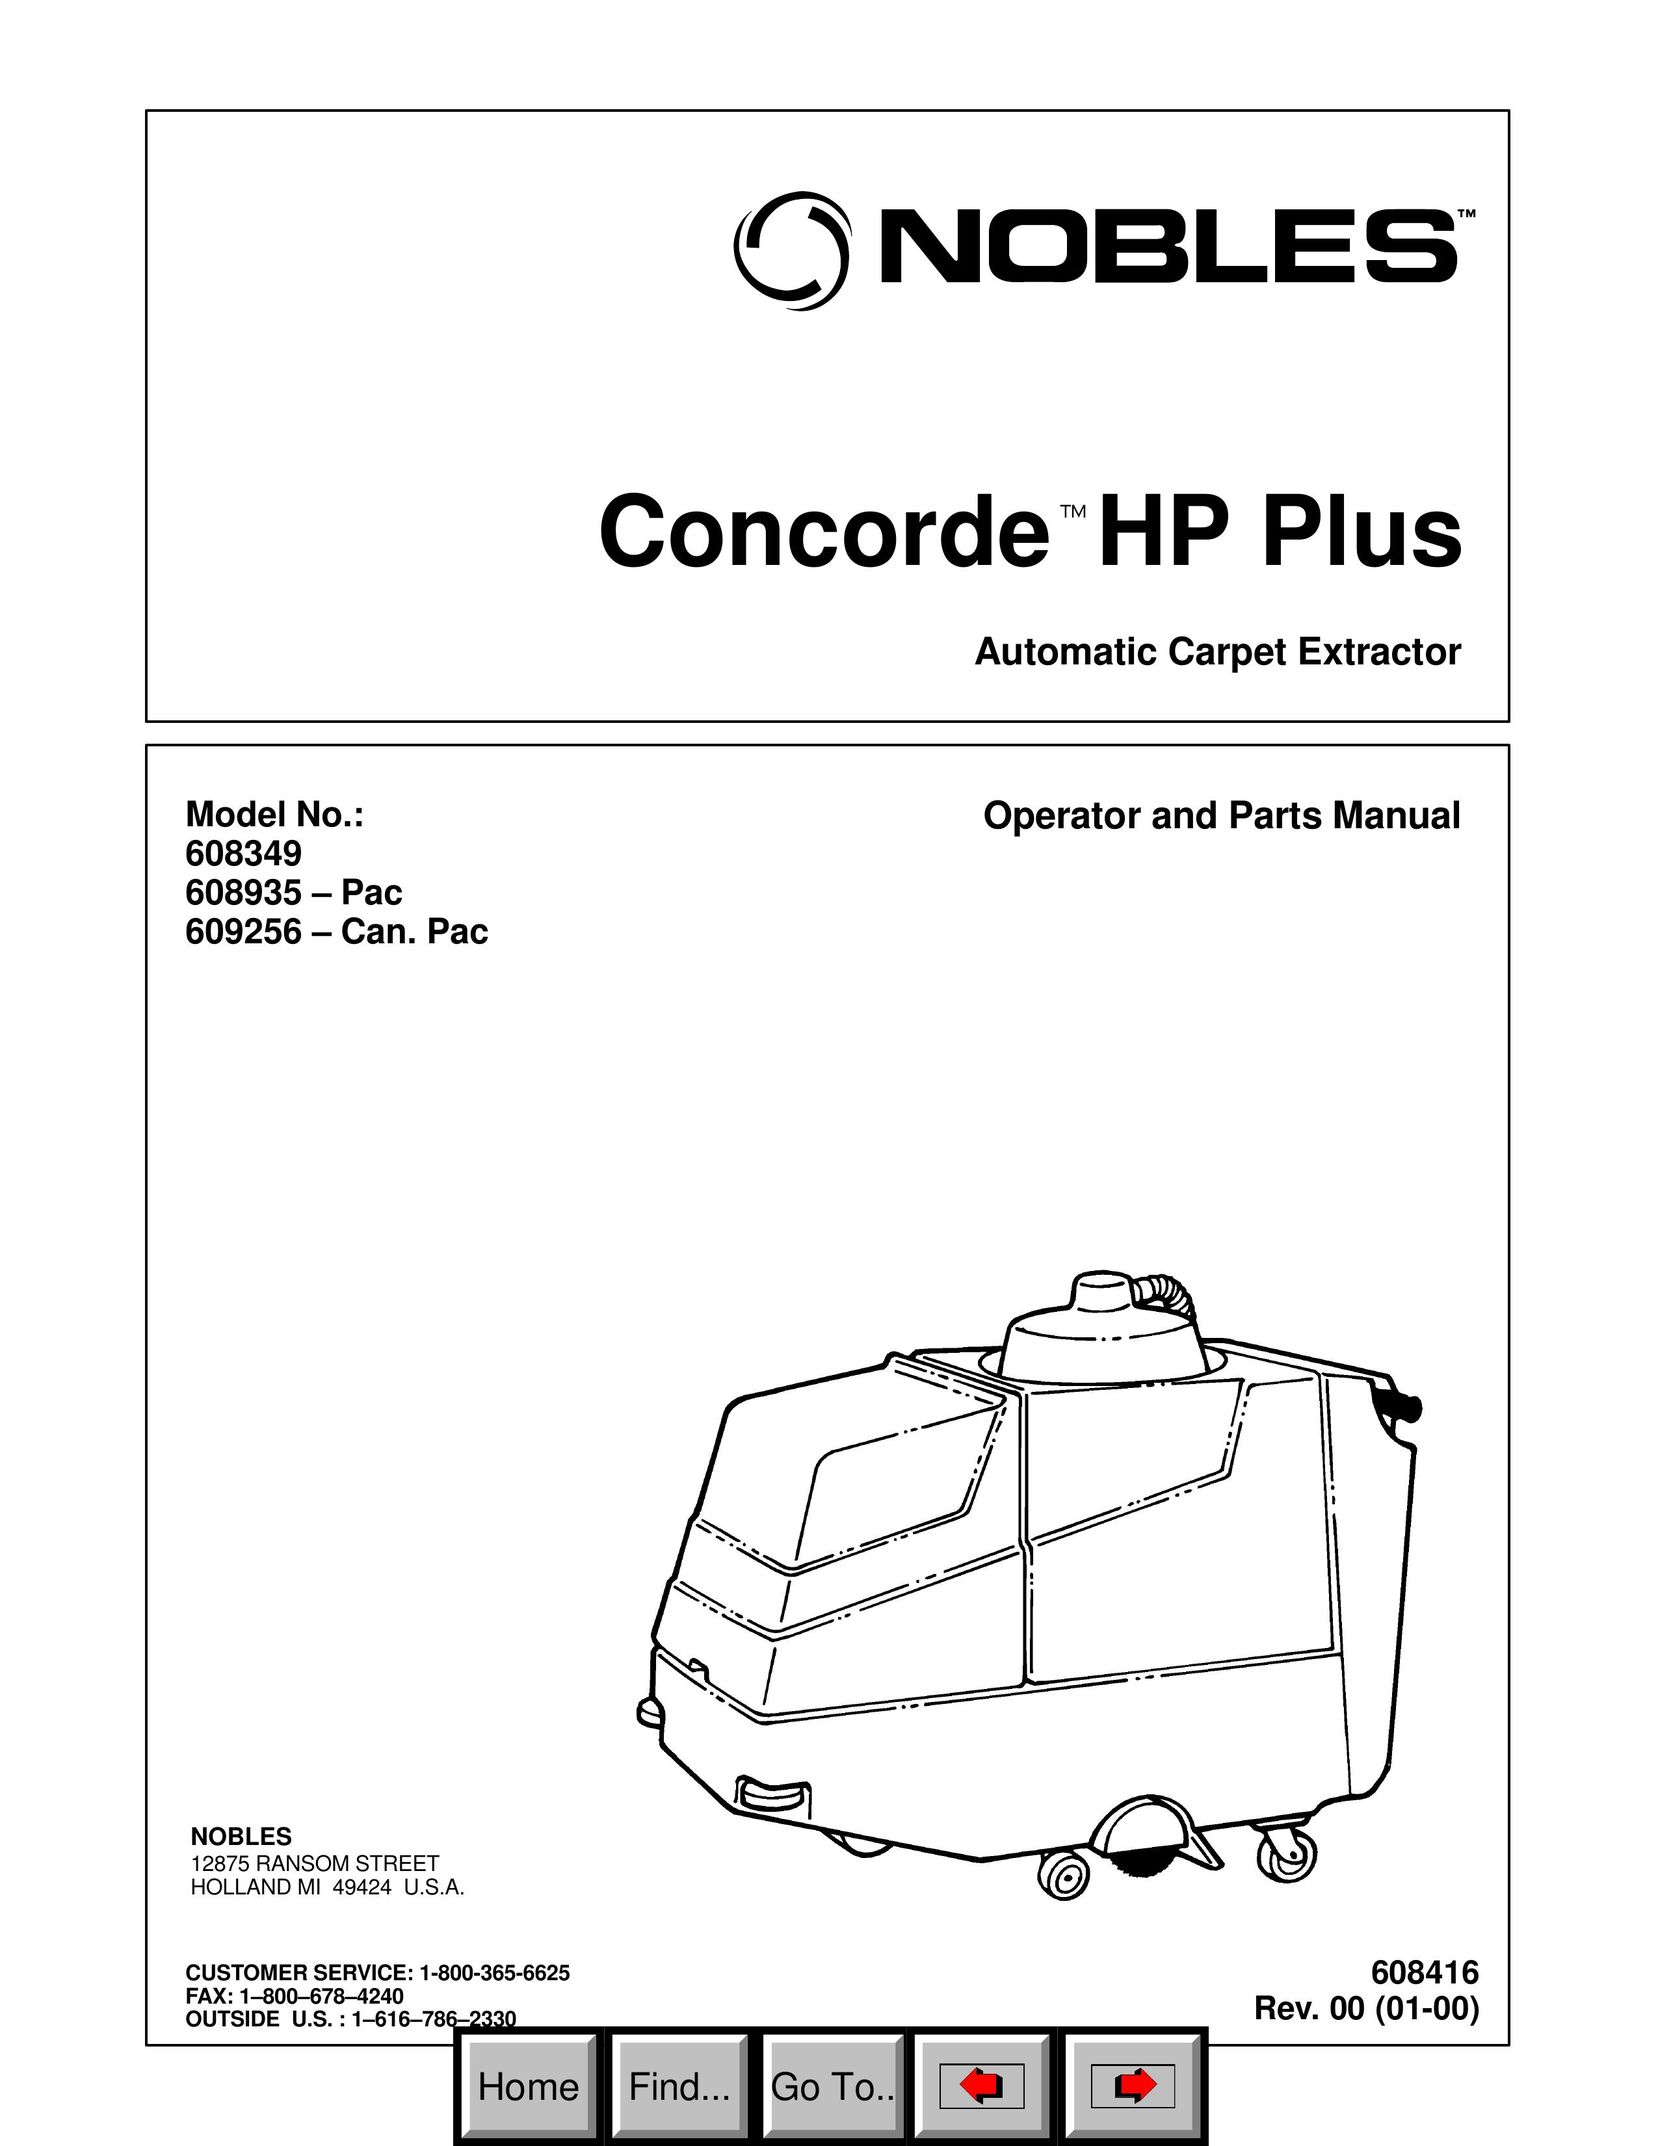 HP (Hewlett-Packard) 609256 Carpet Cleaner User Manual